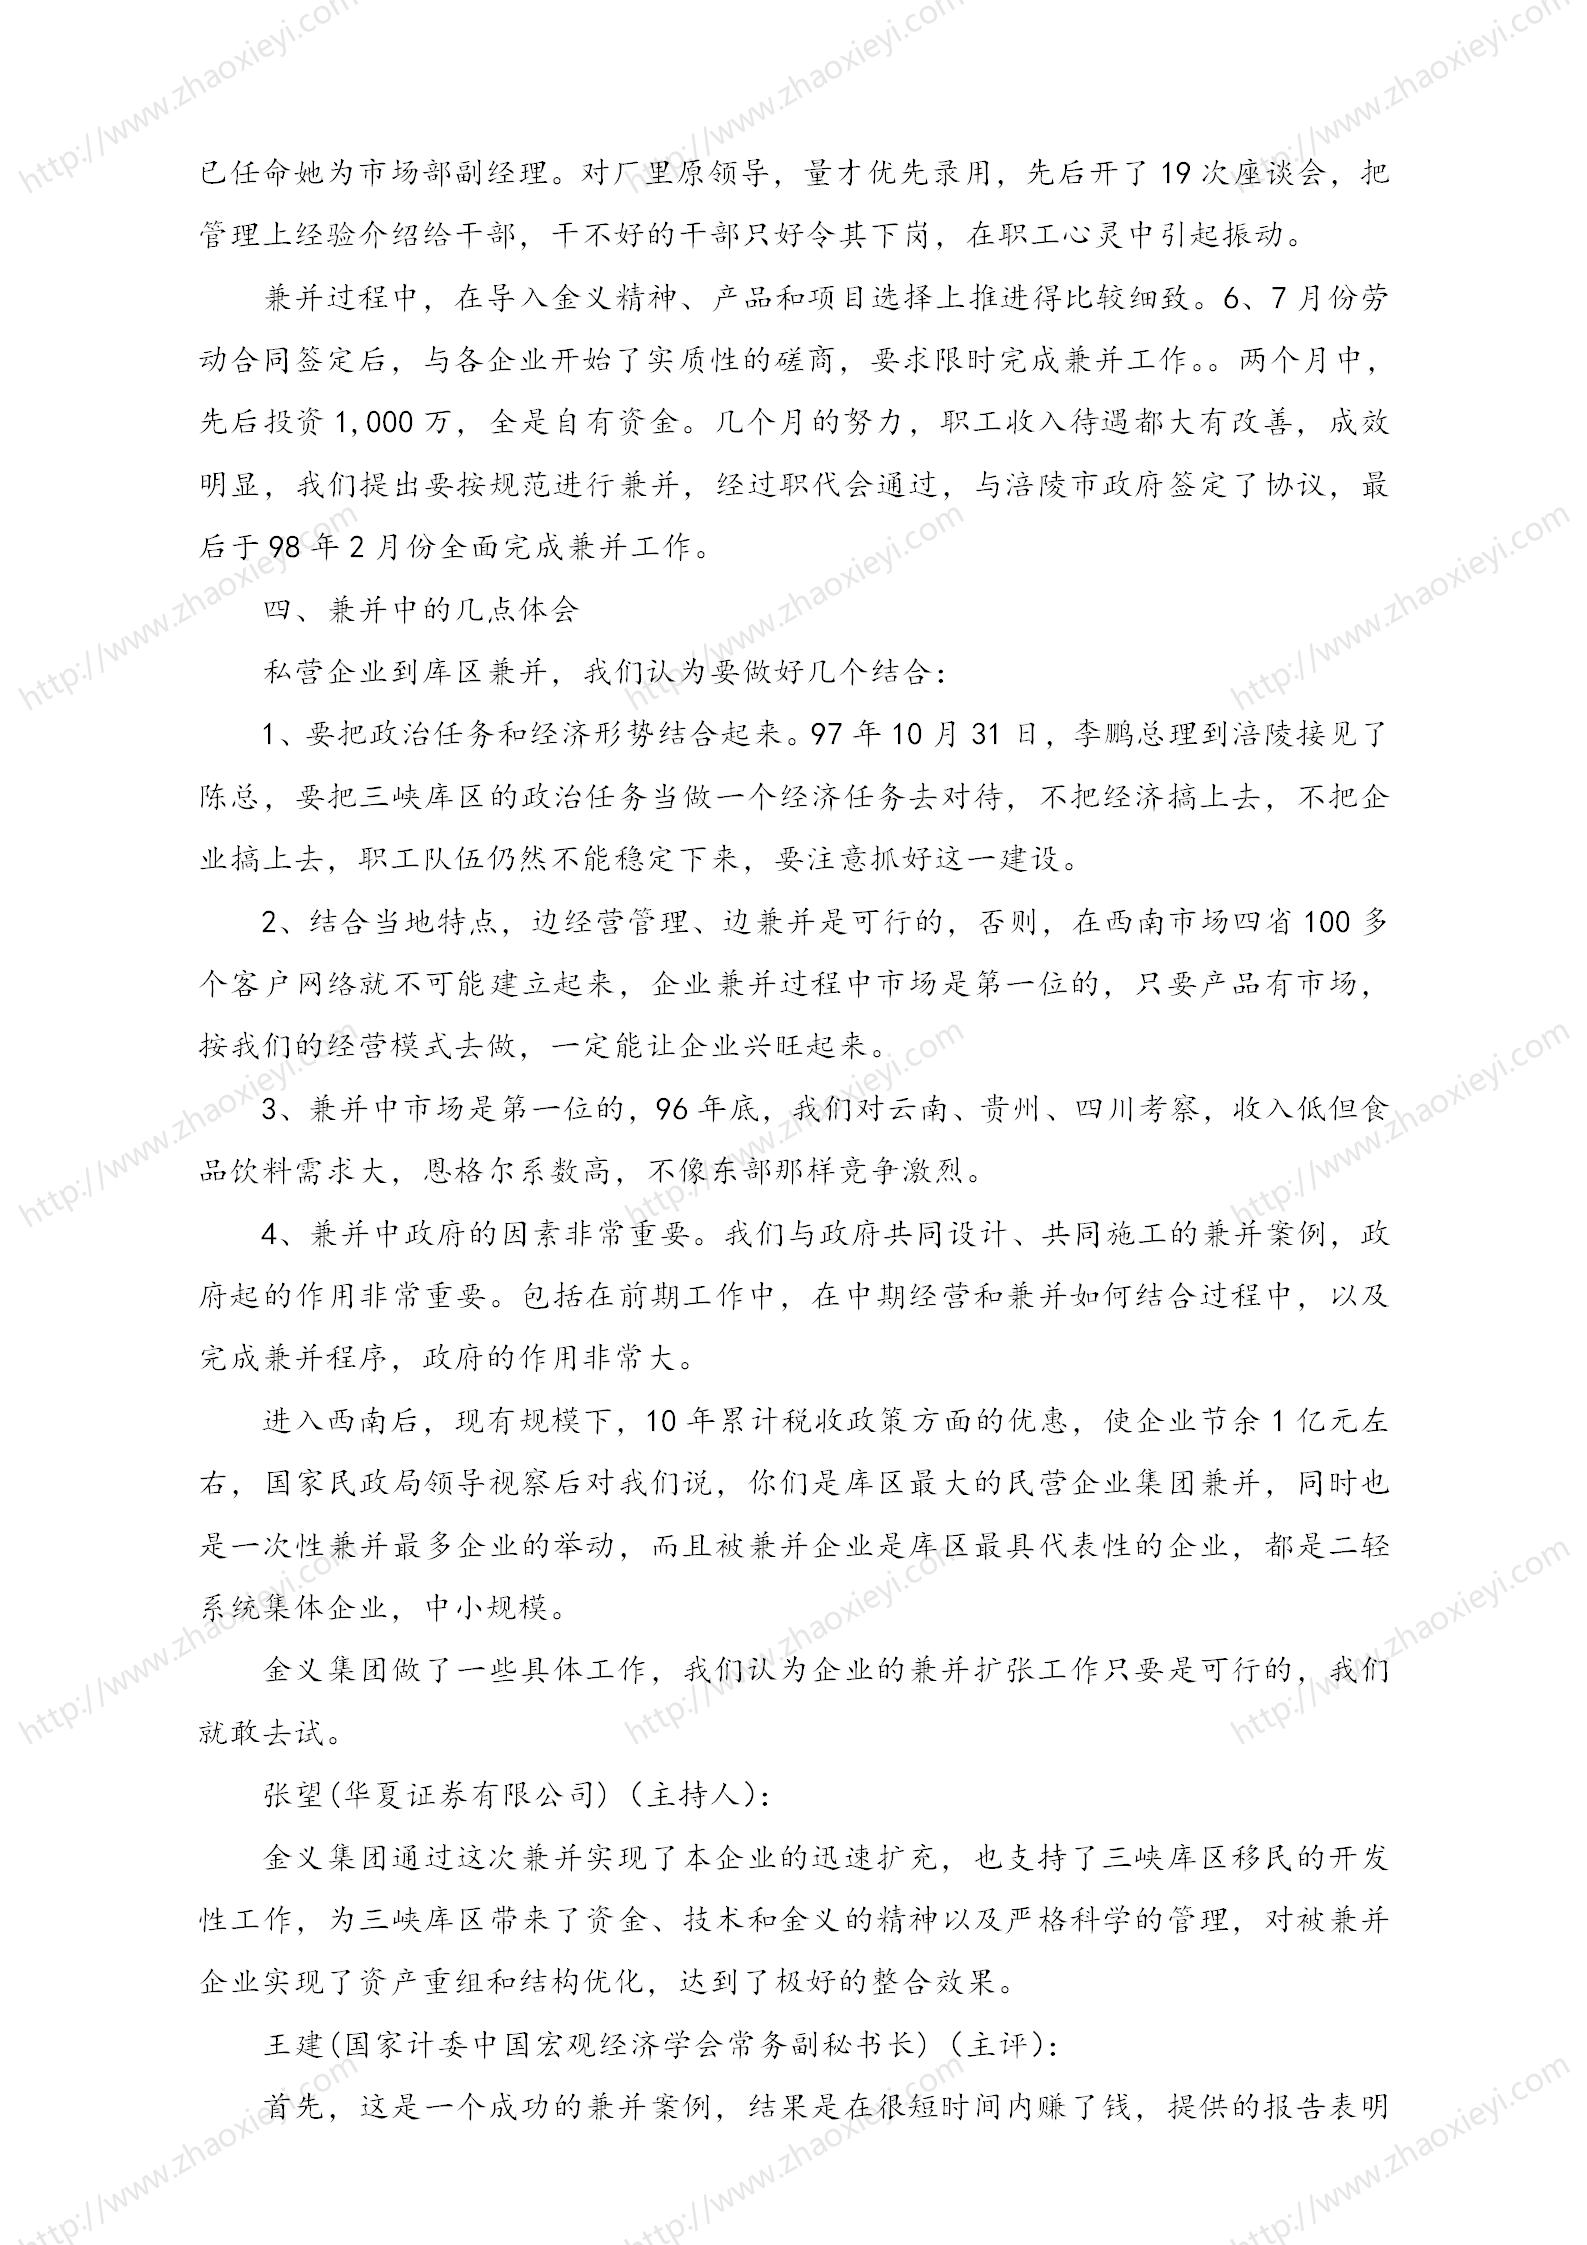 中国企业并购经典案例_137.jpg